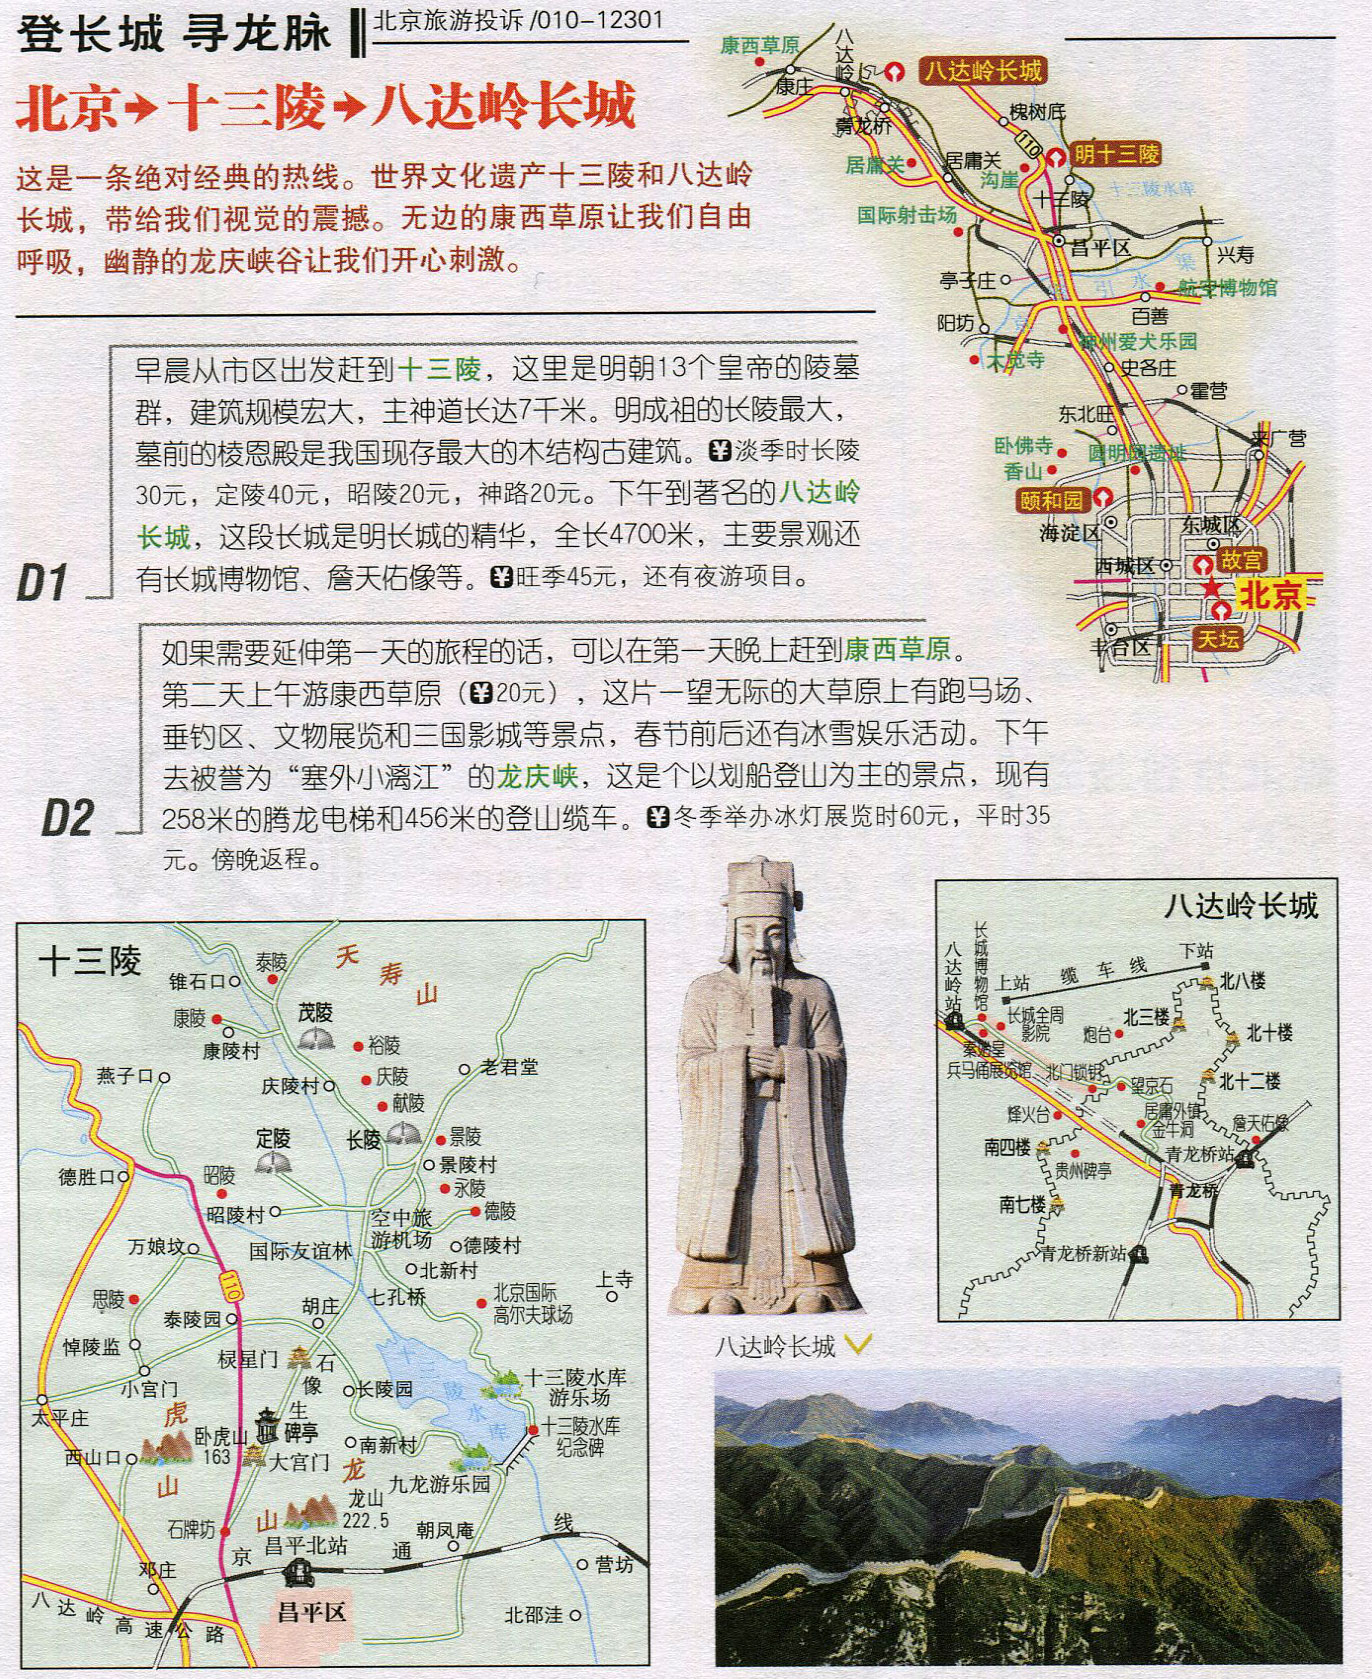 北京旅游线路图_登长城寻龙脉